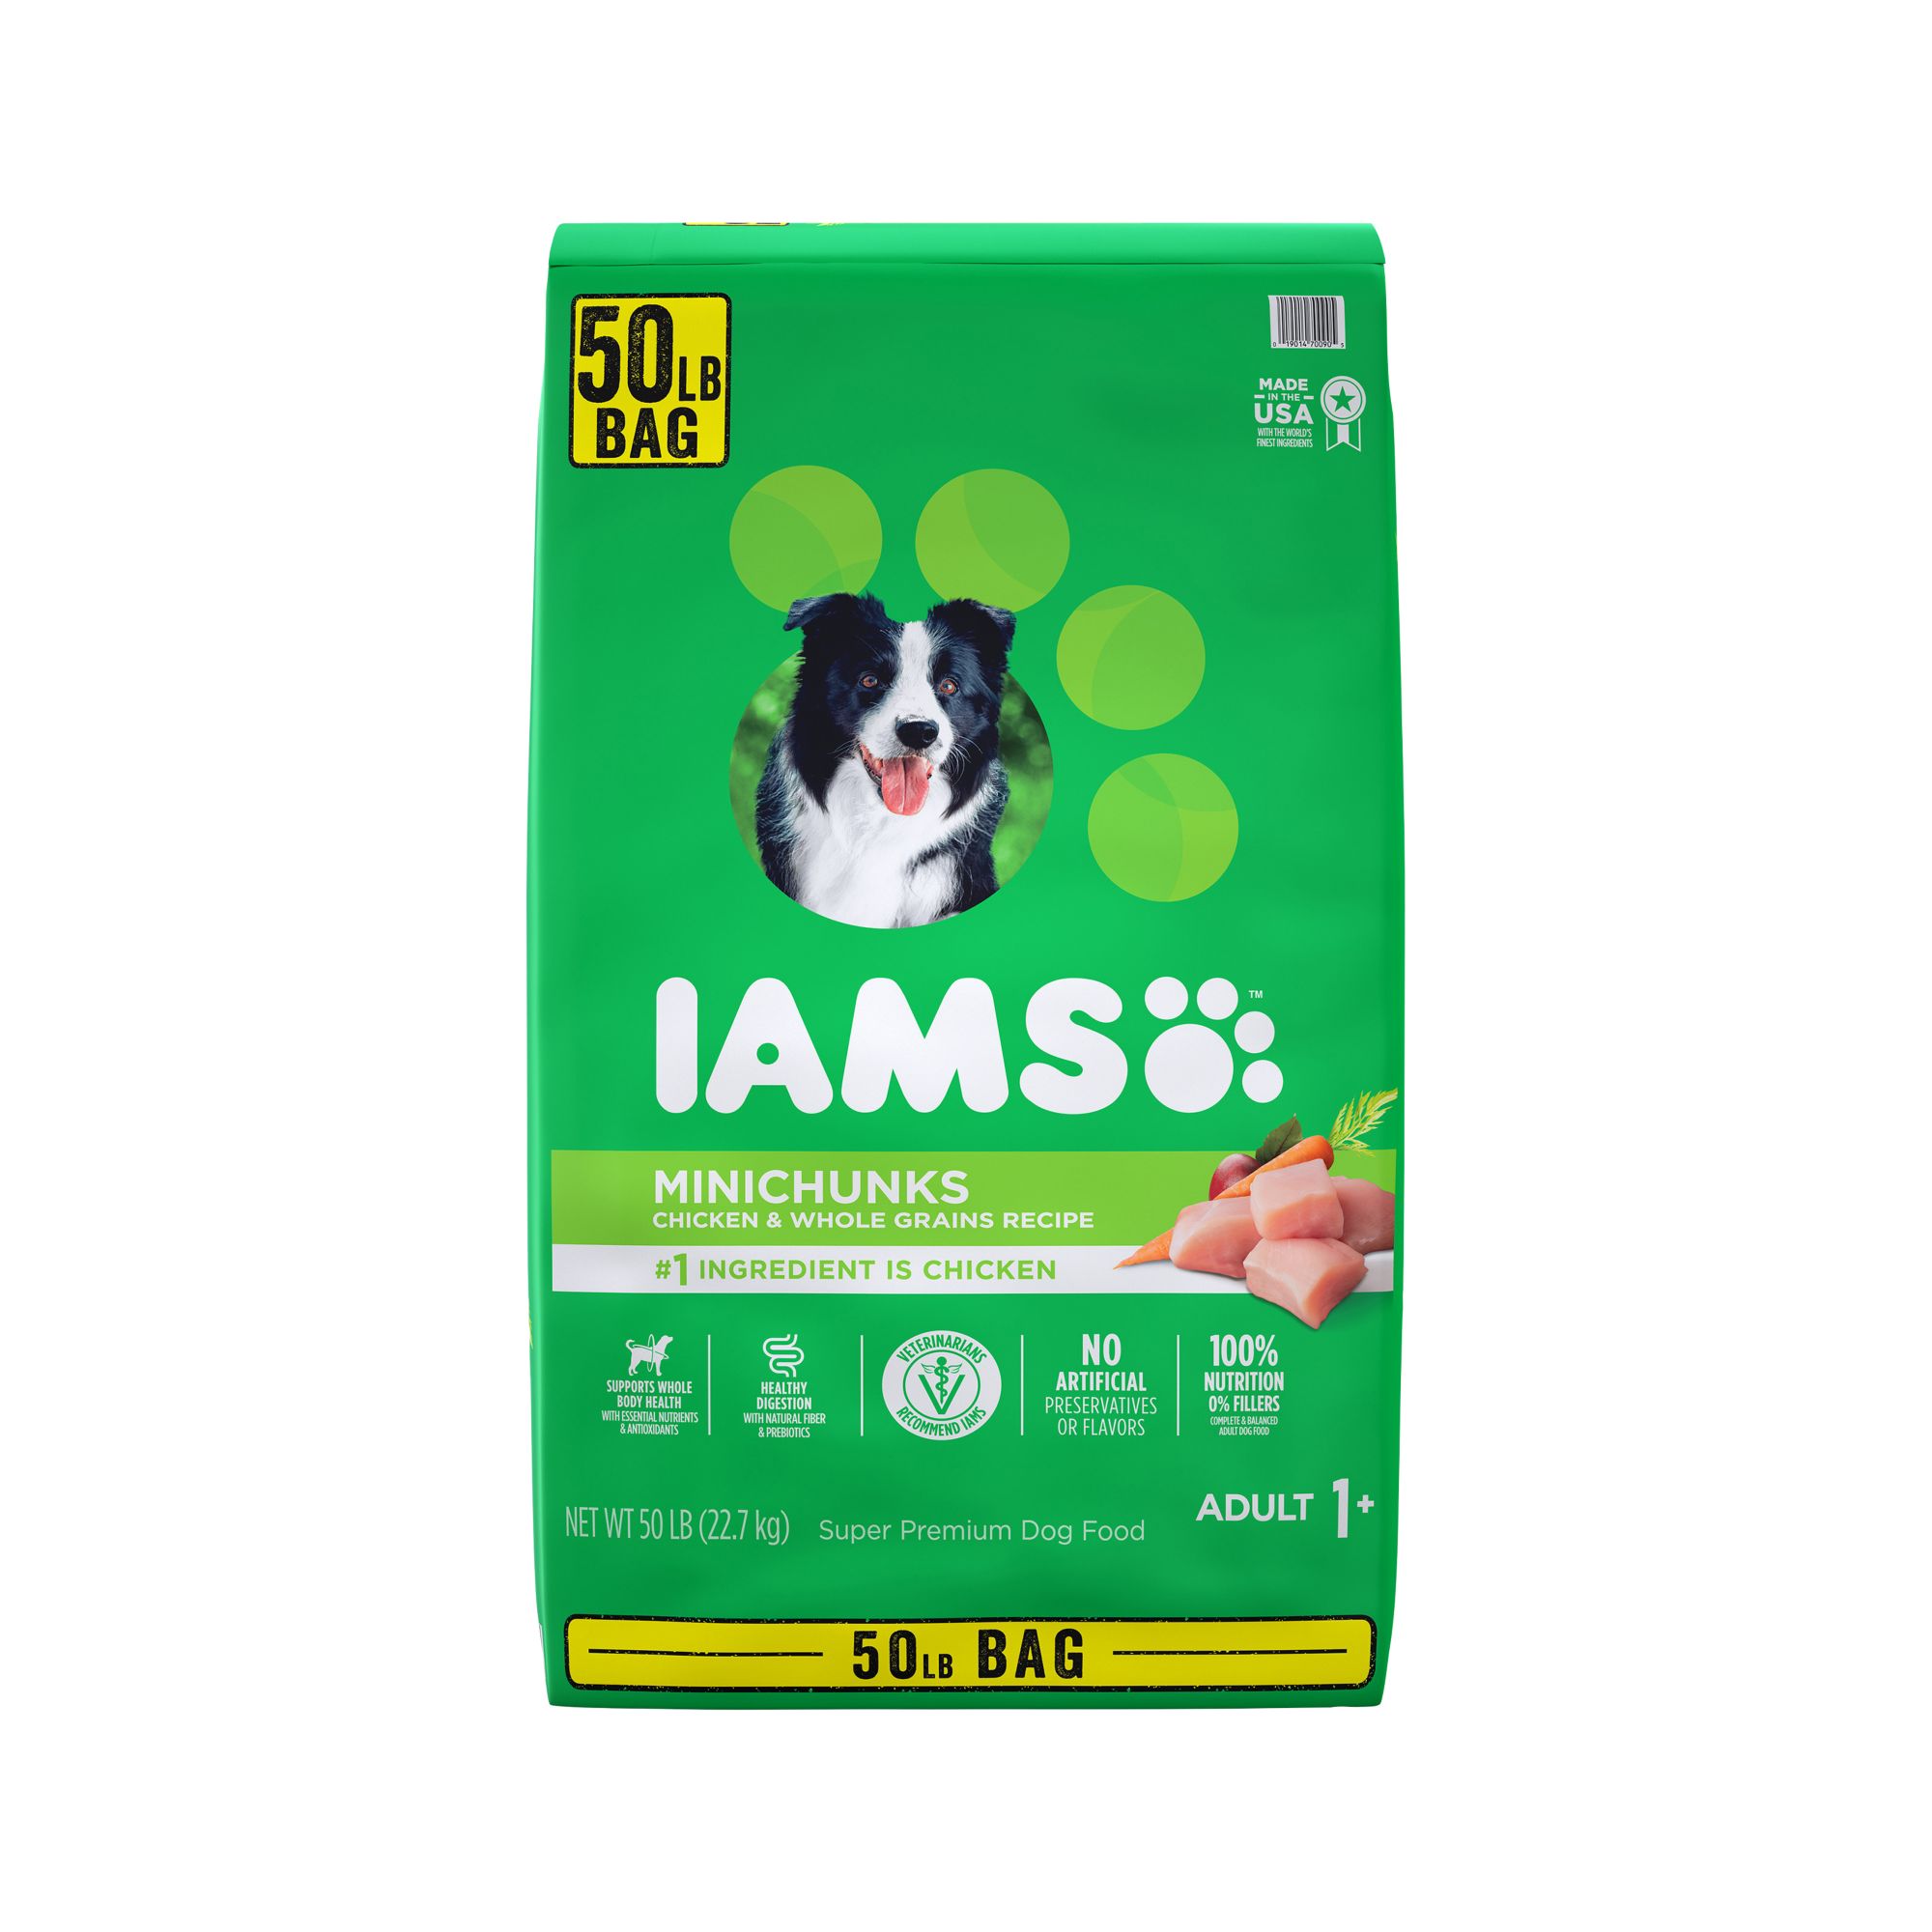 IAMS Minichunks Adult Dry Dog Food, 50 